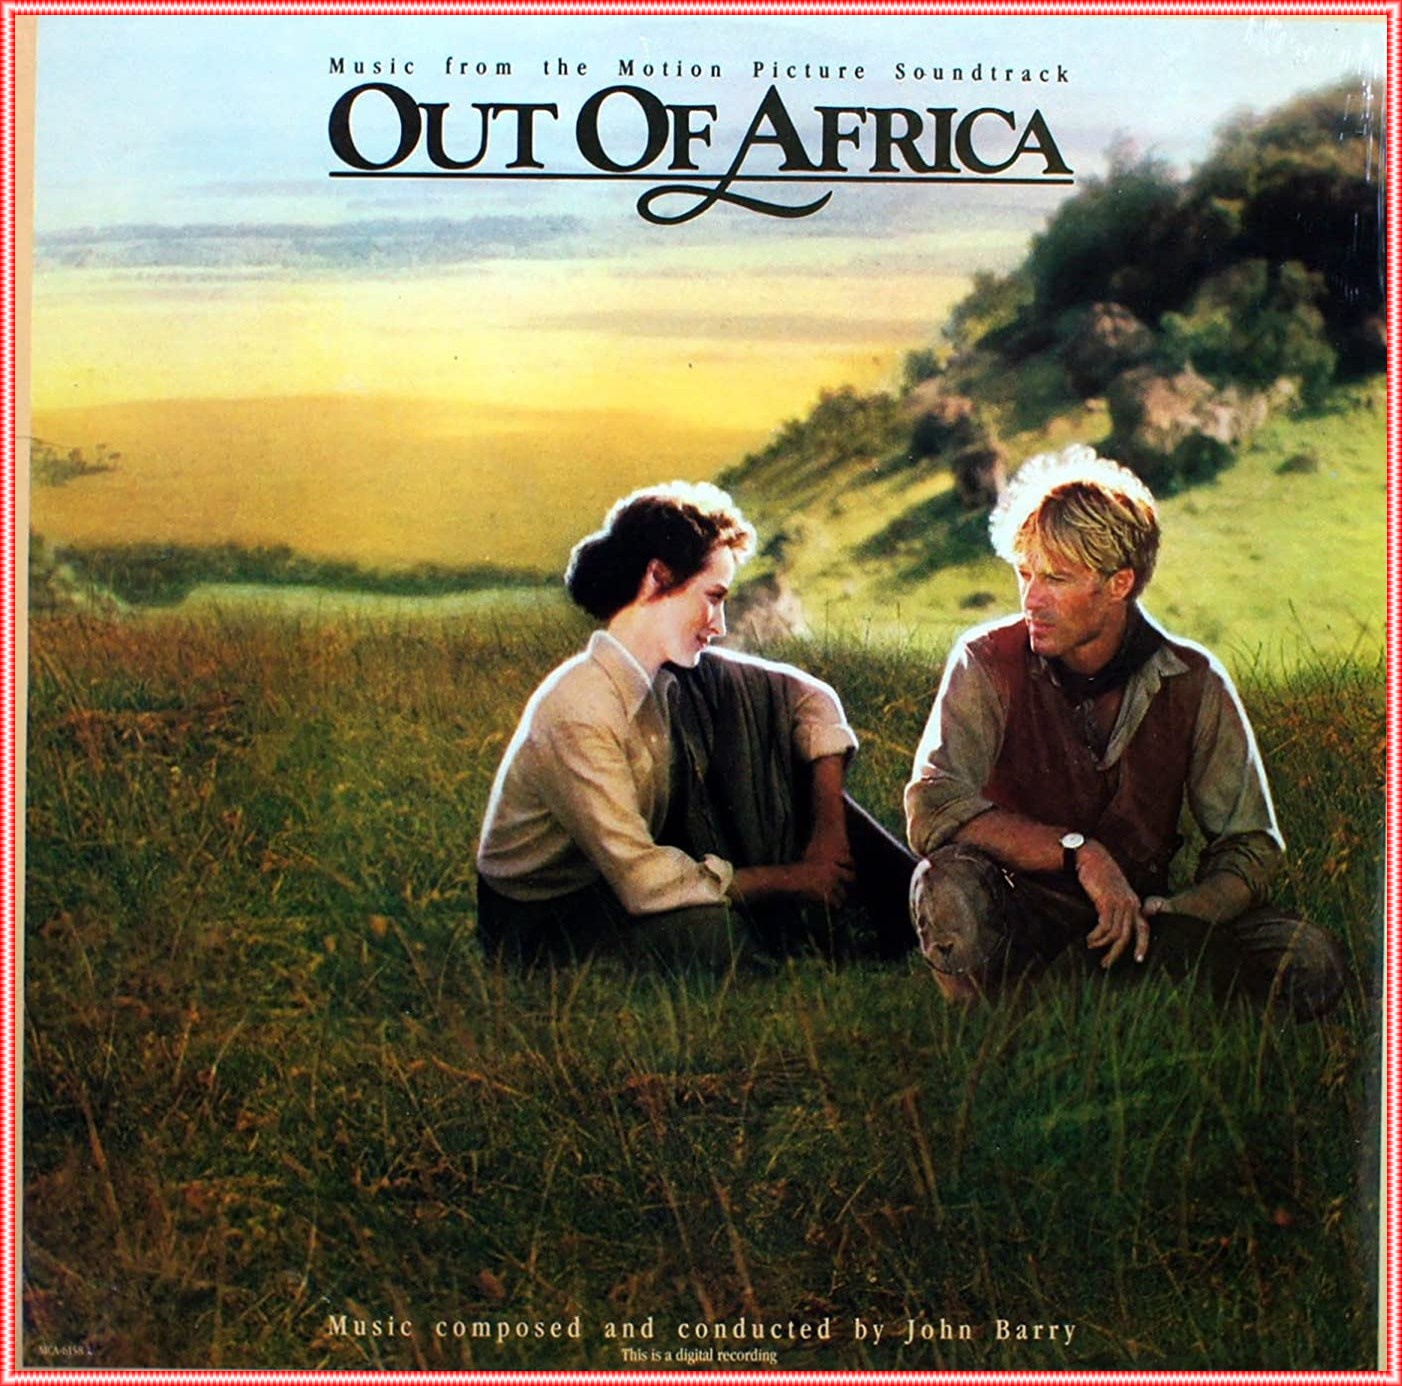 LINTERNA MÁGICA: Banda Sonora Original: Out of Africa (Memorias de África)